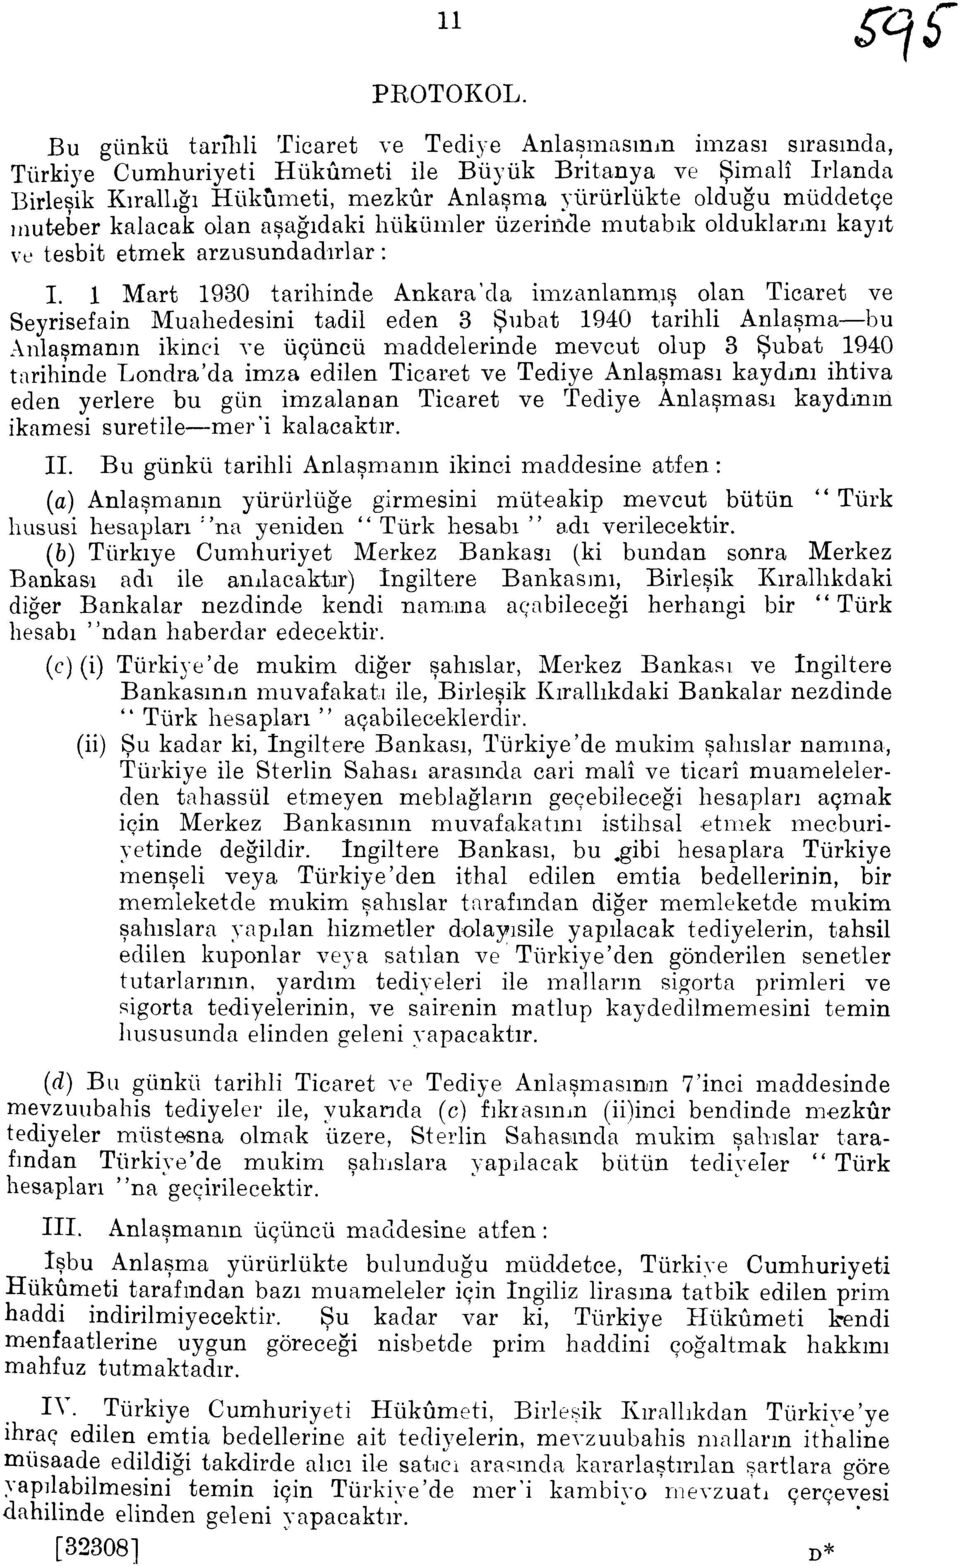 1 Mart 1930 tarihinde Ankara'da imzanlanm,is olan Ticaret ve Seyrisefain Muahedesini tadil eden 3 Subat 1940 tarihli Anlasma-bu Anlasmanin ikinci ve iiciincii maddelerinde mevcut olup 3 Subat 1940